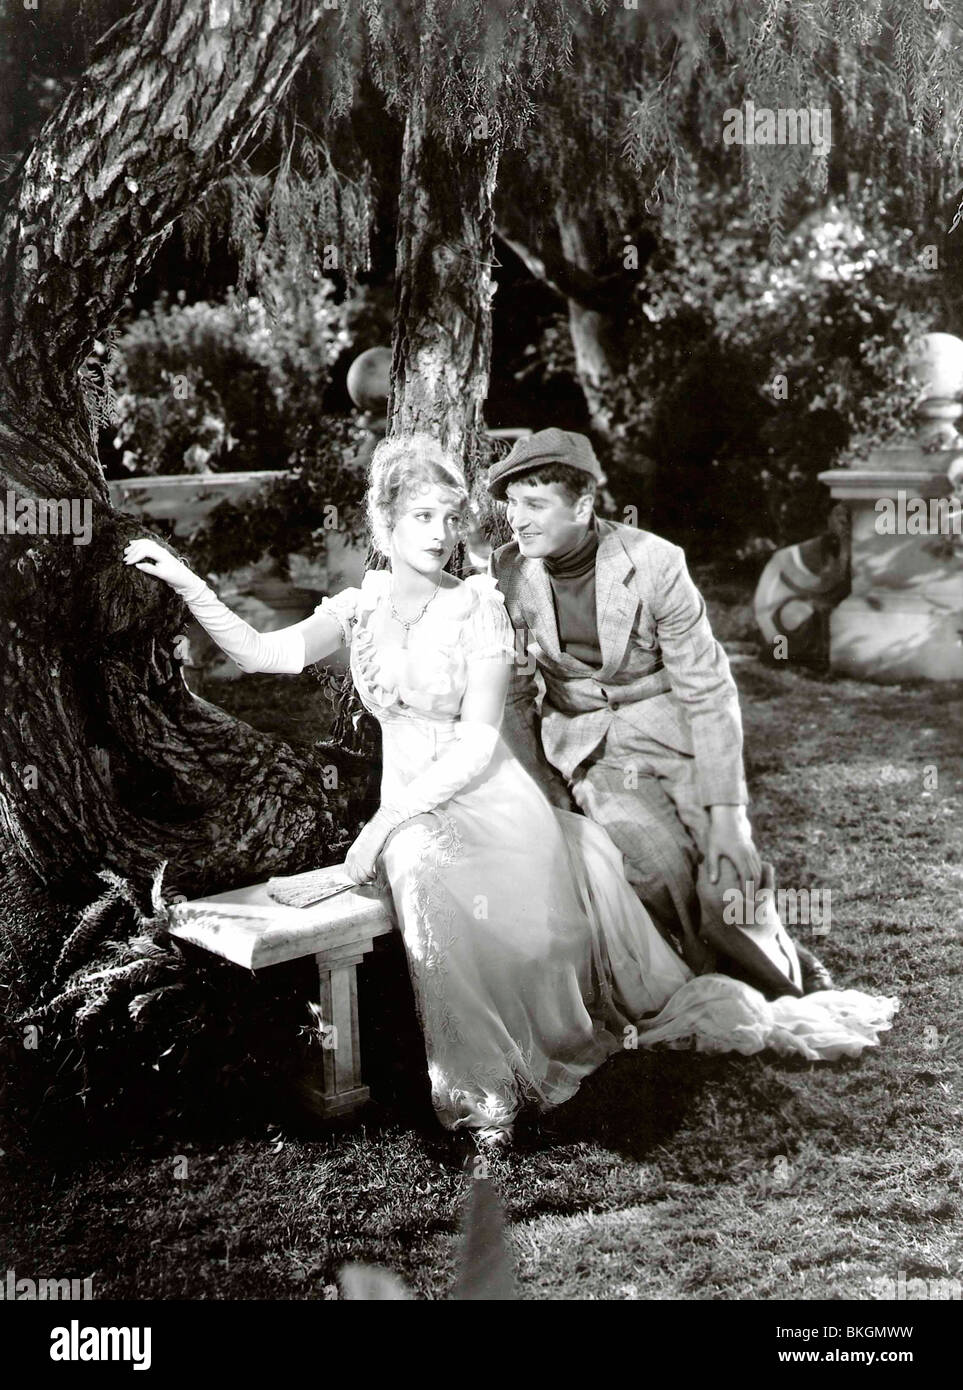 LOVE ME TONIGHT (1932) JEANETTE MACDONALD, MAURICE CHEVALIER, ROUBEN MAMOULIAN (DIR) LMTN 002 P Stockfoto